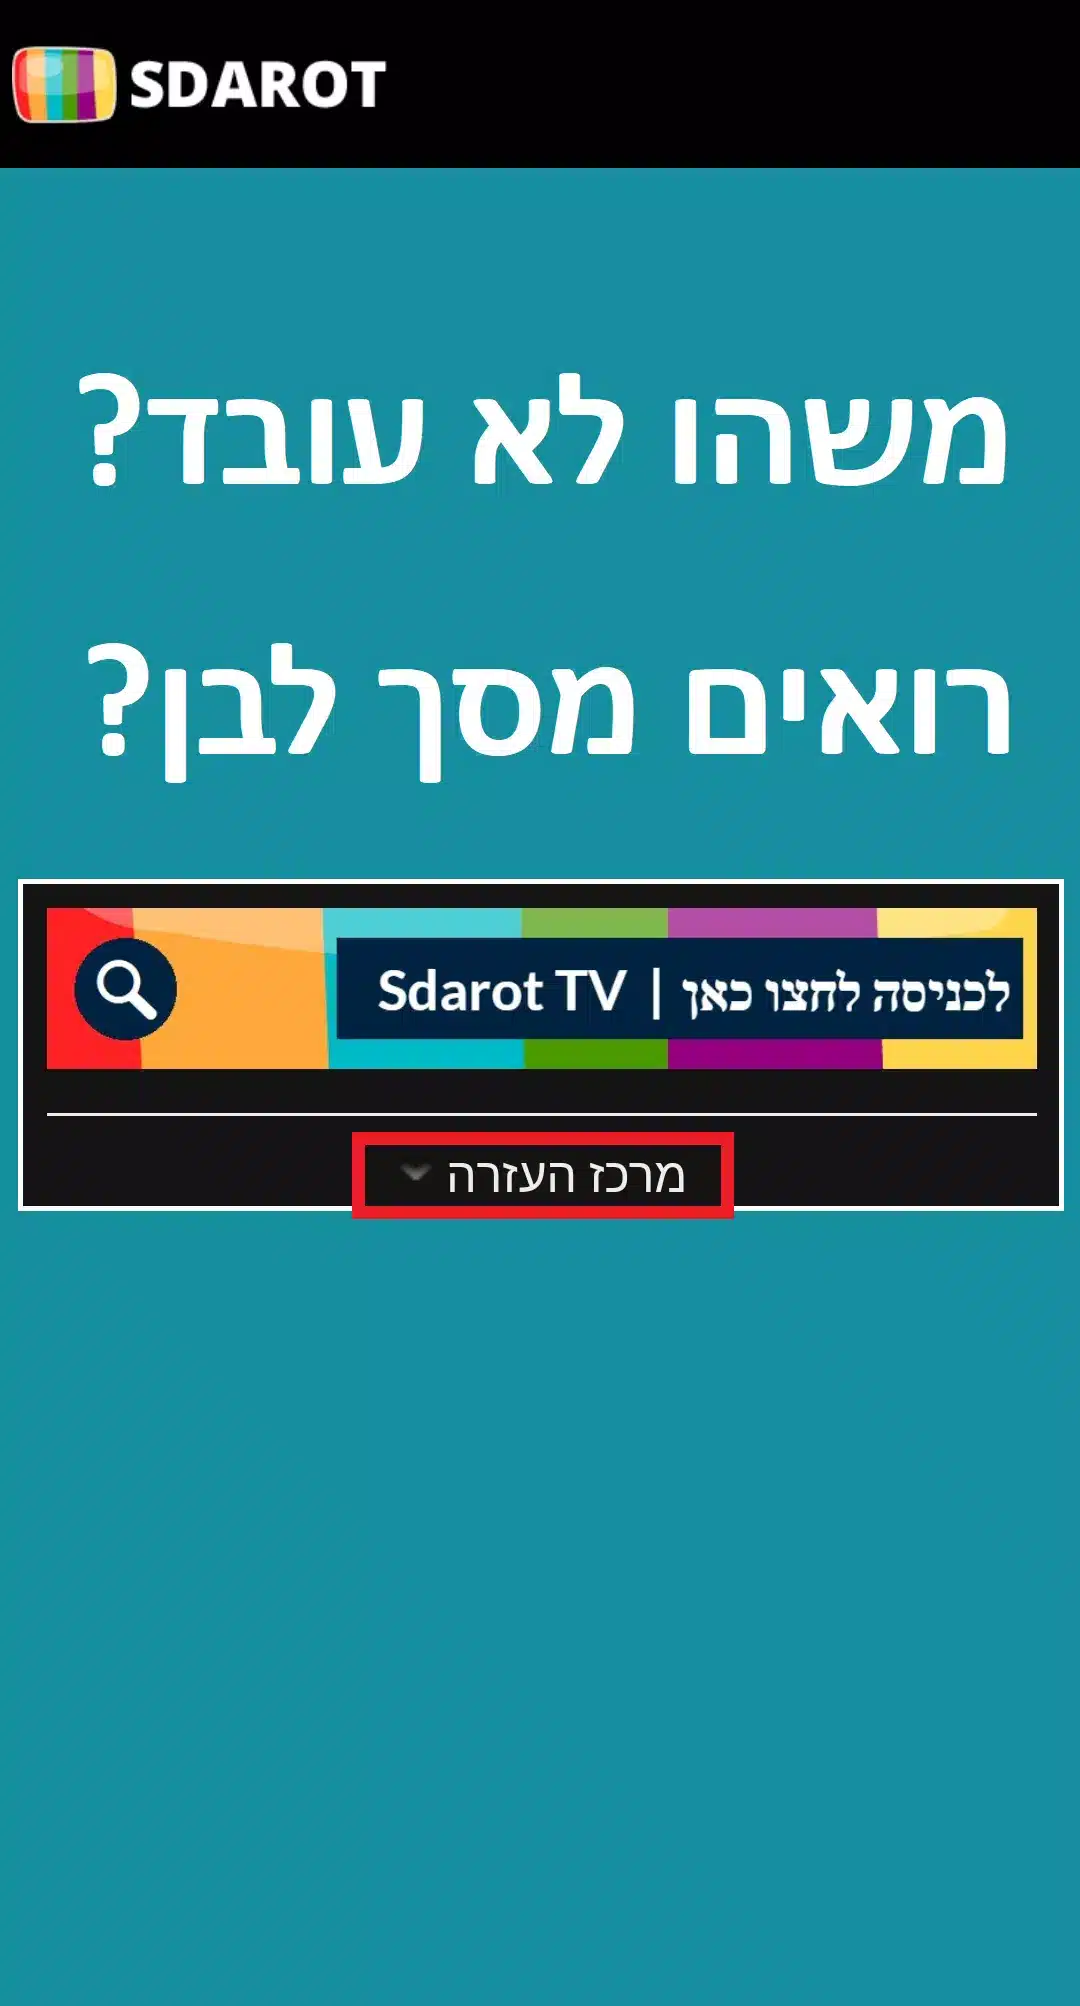 Sdarot TV סדרות Image 3